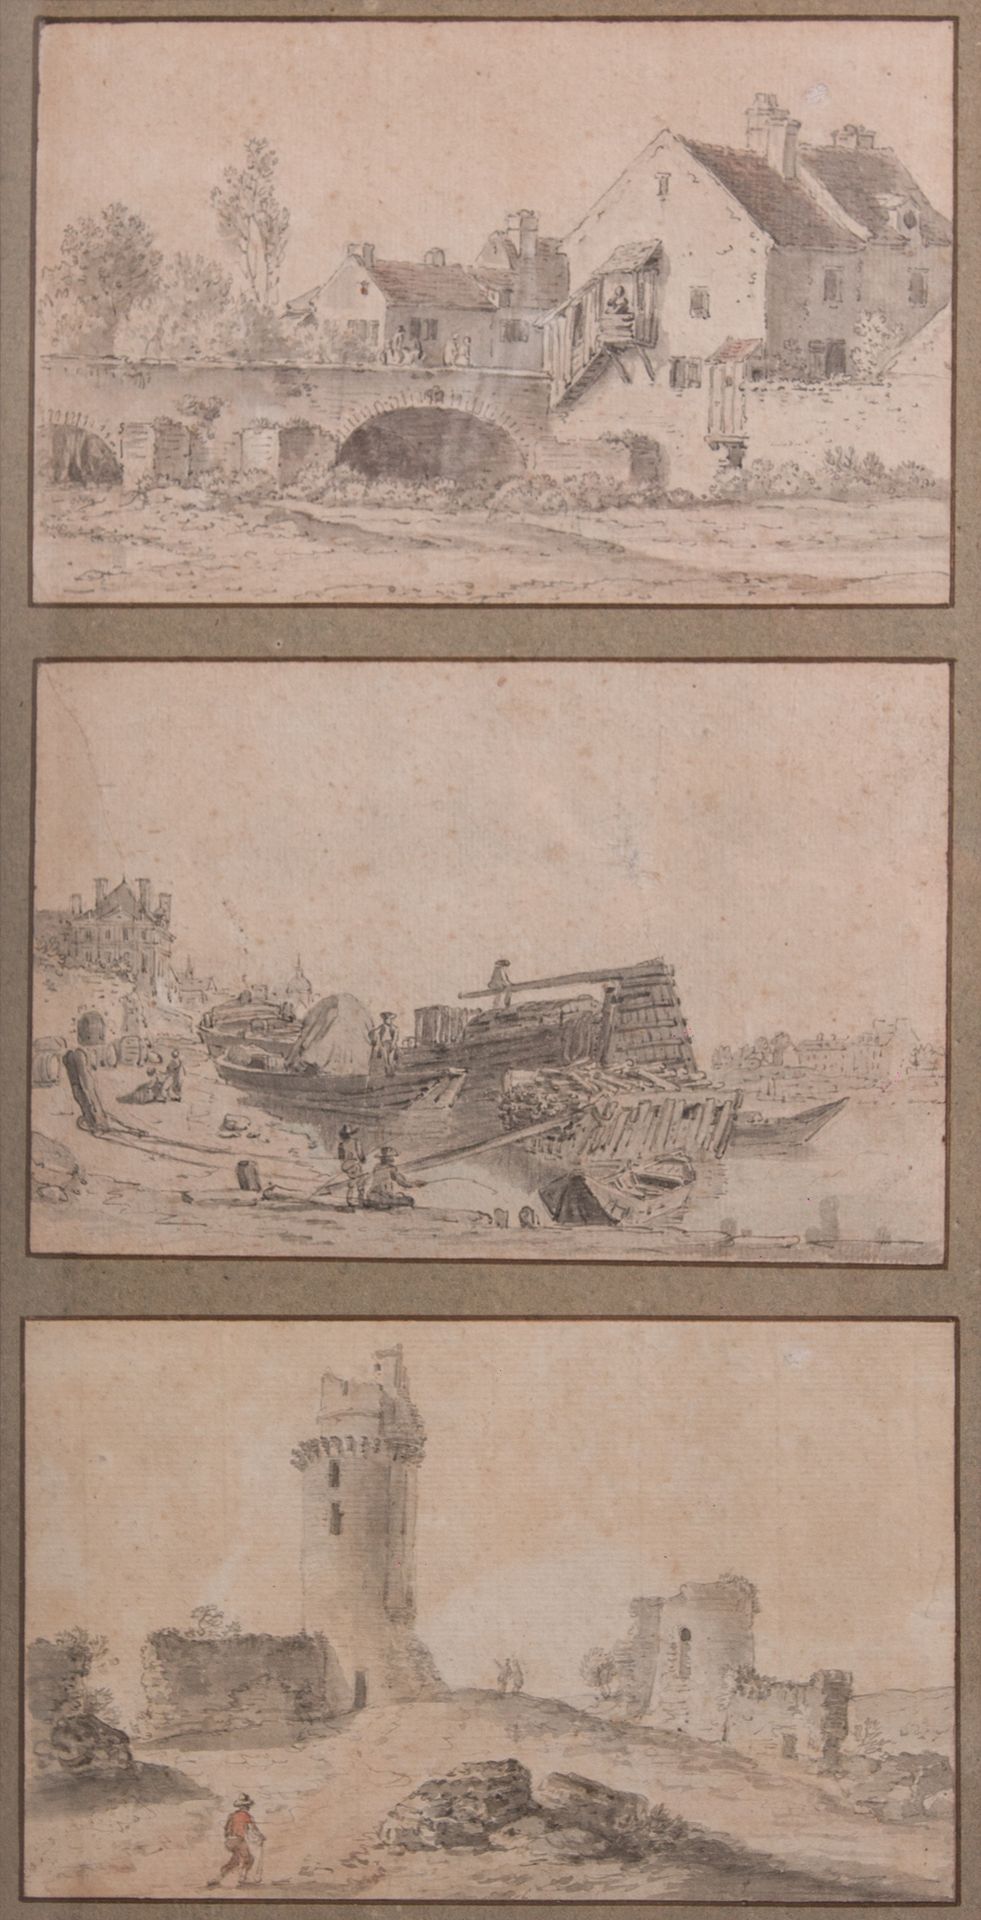 Null 归功于亚历克西斯-尼古拉-佩尼翁（南希1726-巴黎1782）。

同一个山头上的三个景观：一个有桥、一个海洋和一个废墟中的人物的生动景观

水彩画、&hellip;